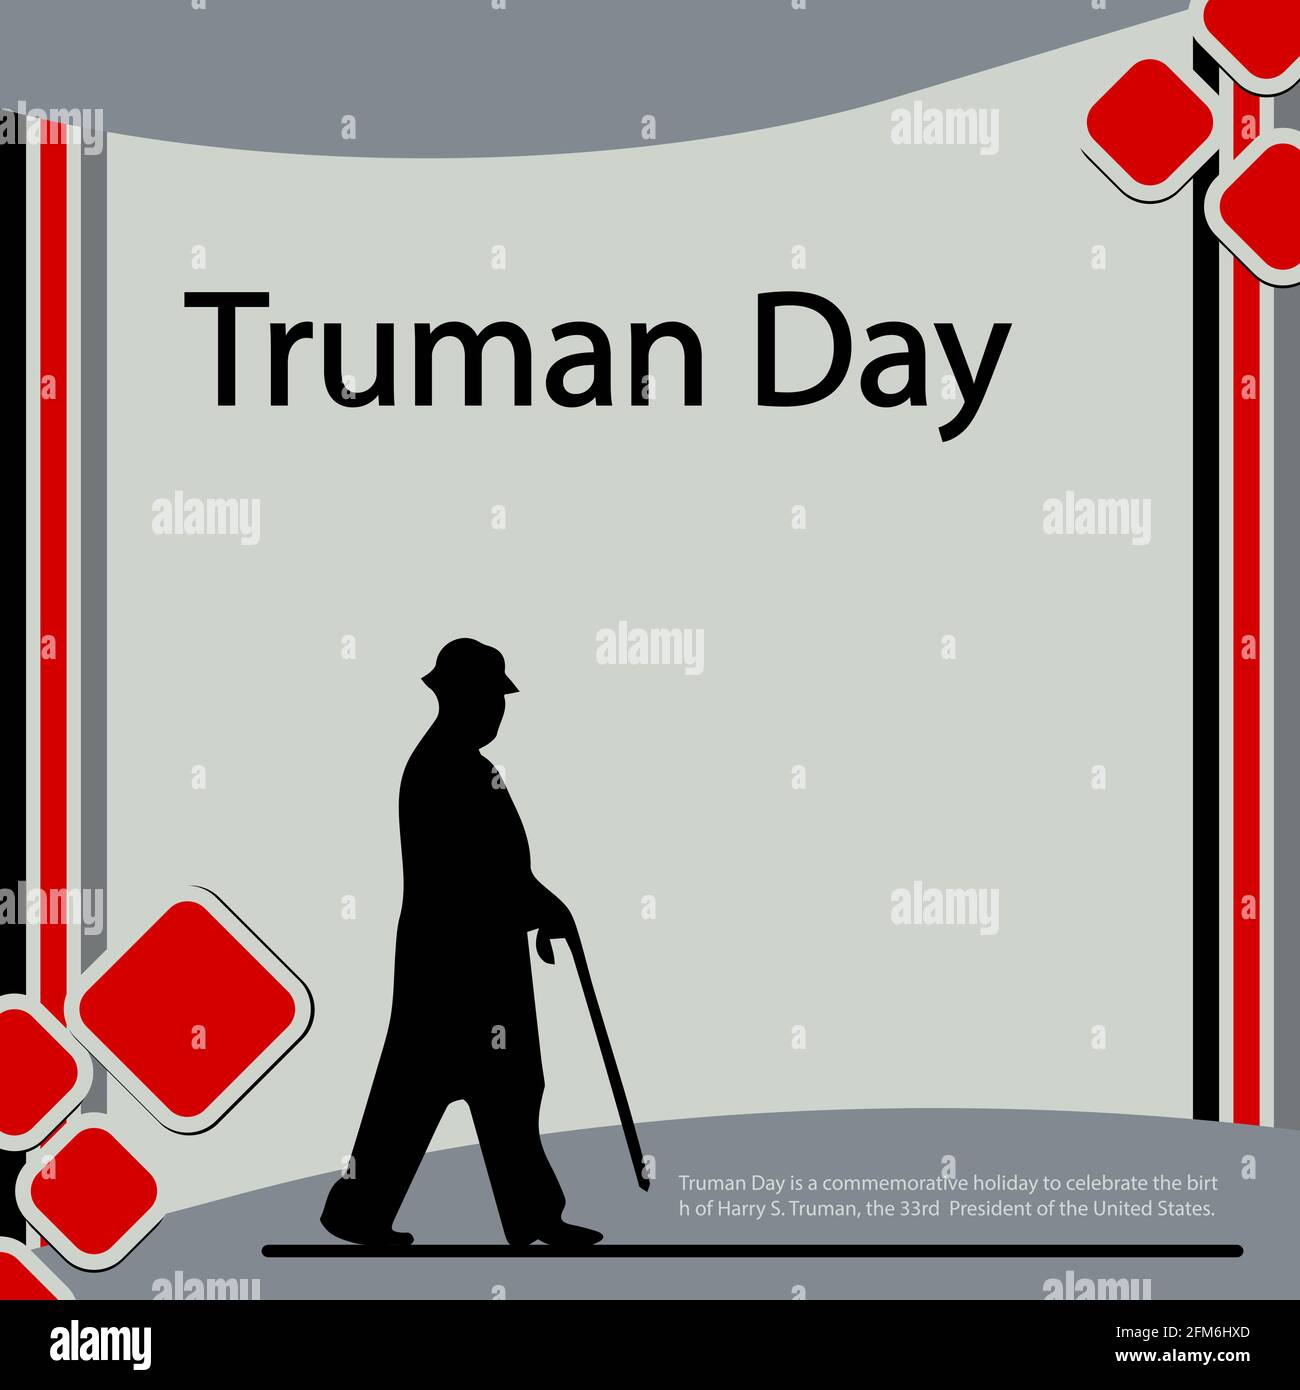 Le jour de Truman est un jour commémoratif pour célébrer la naissance de Harry S. Truman, le 33ème président des États-Unis. Illustration de Vecteur